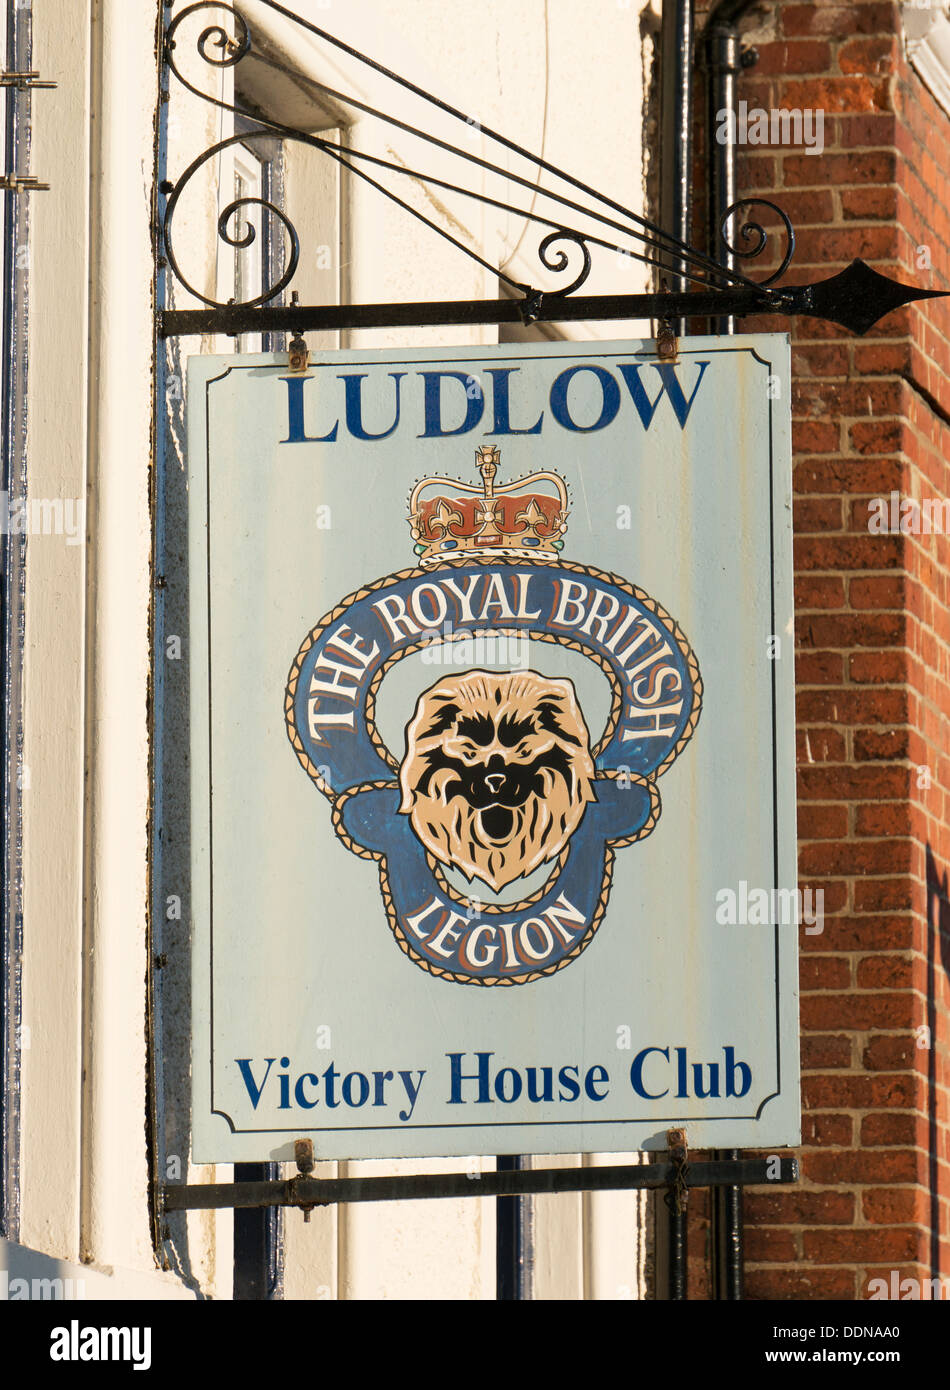 Die Royal British Legion Zeichen außerhalb der Sieg House Club Ludlow, England, UK Stockfoto